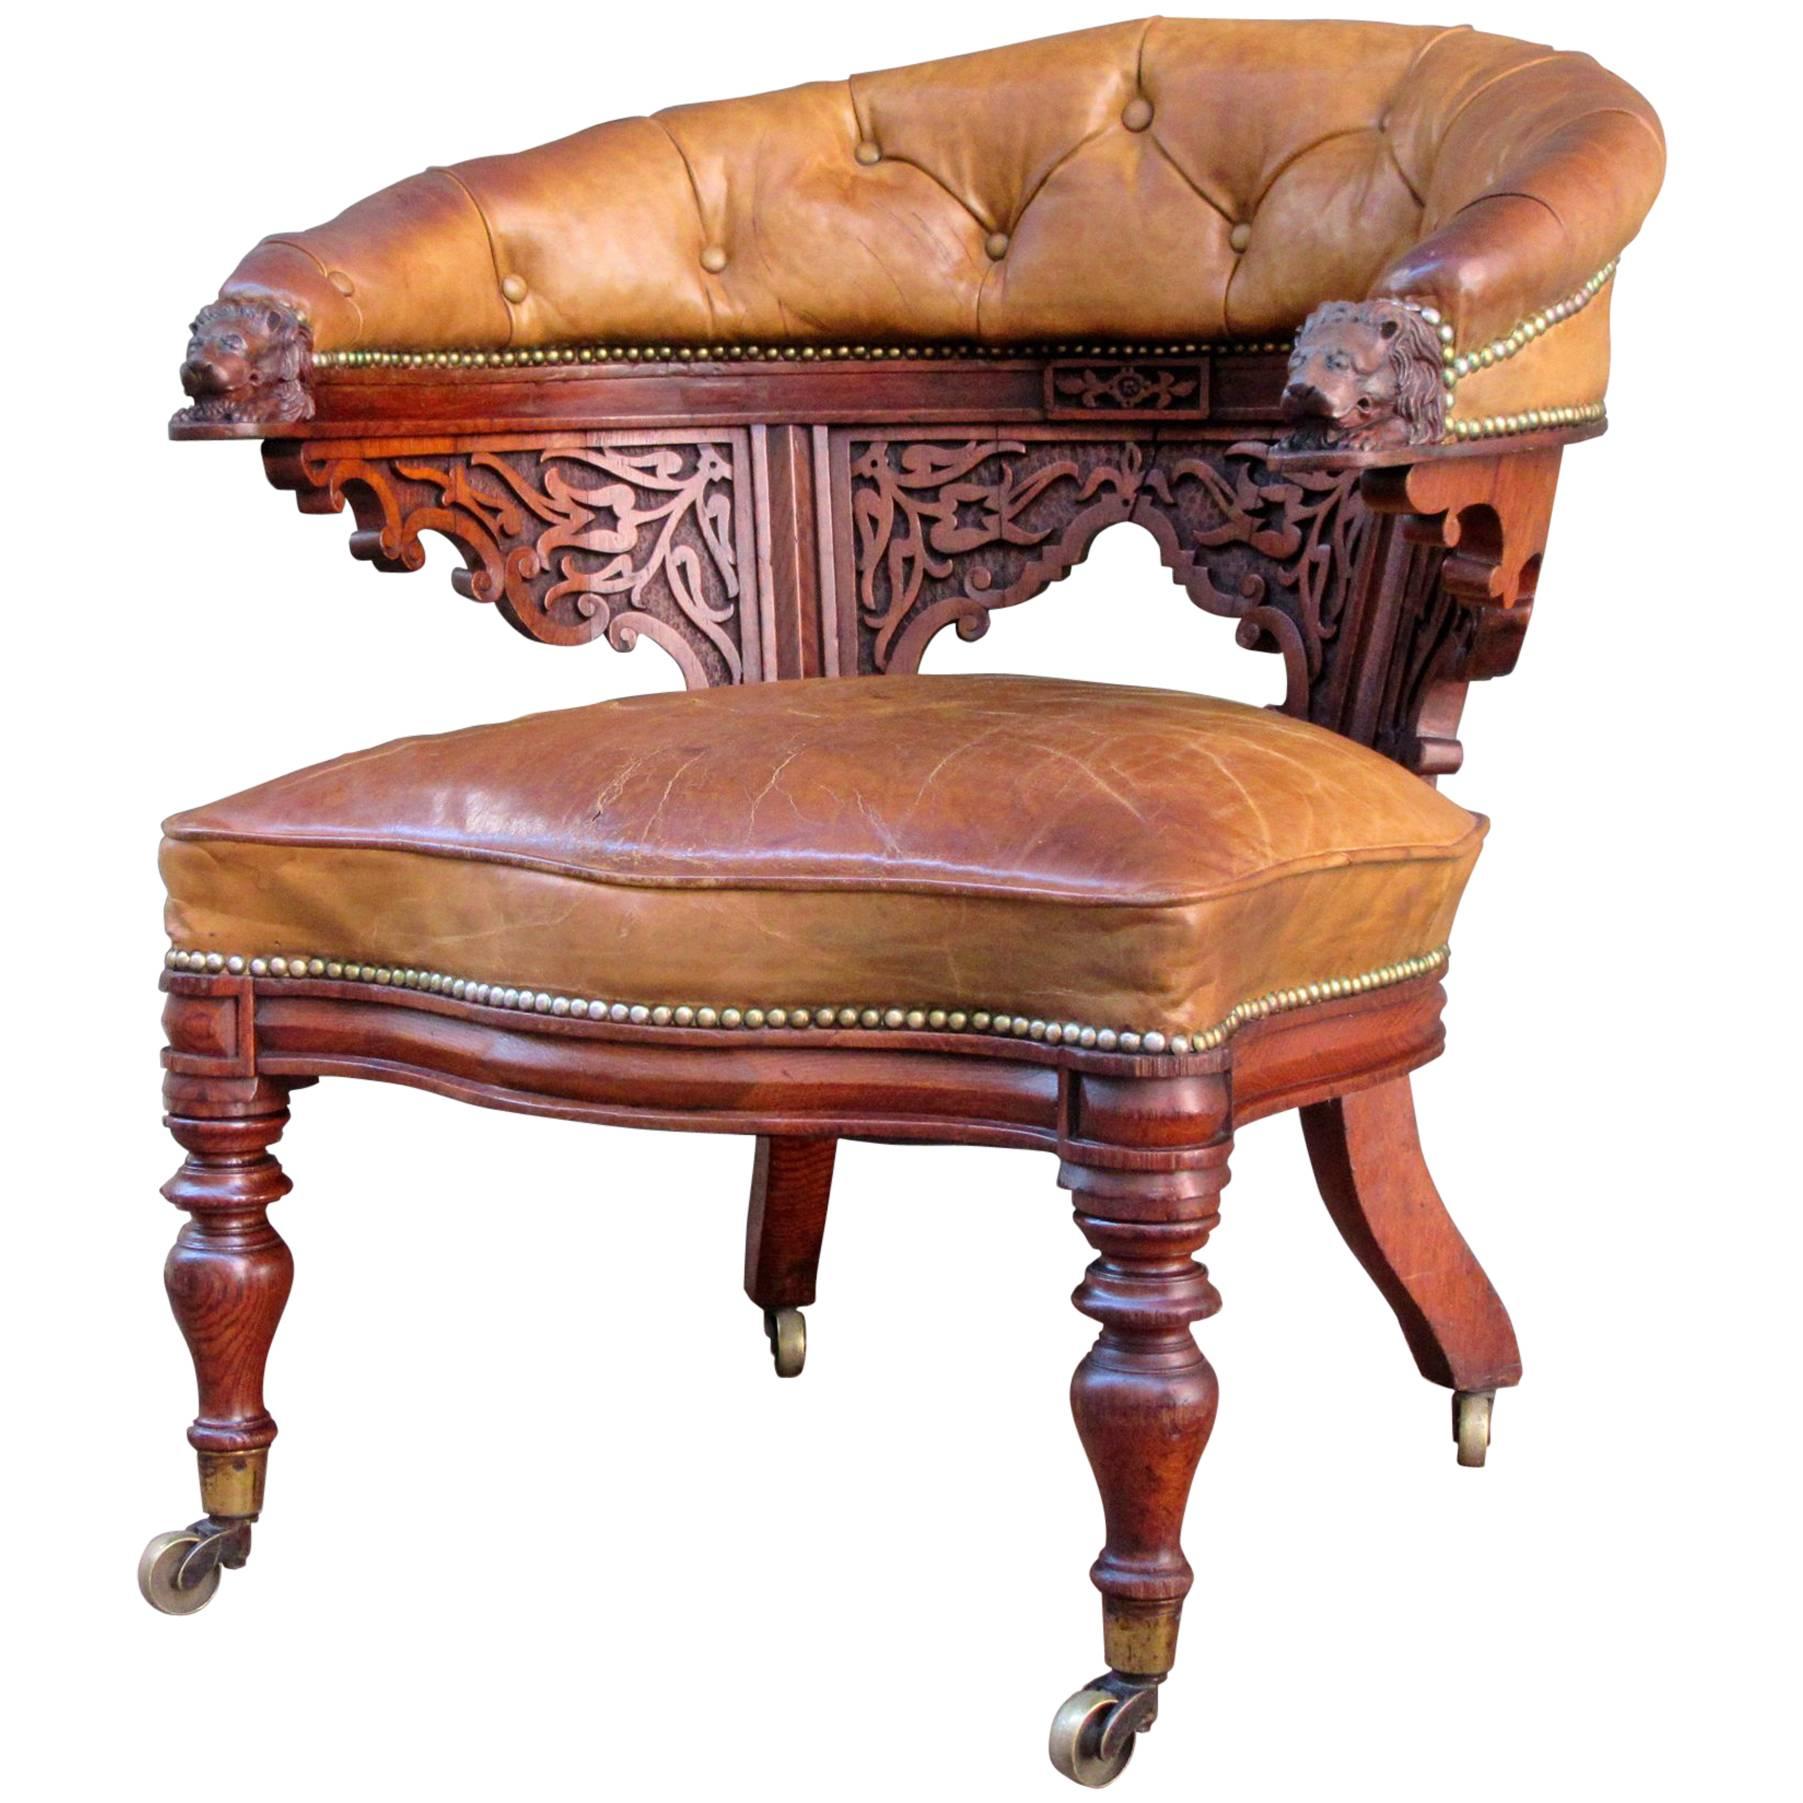 Early 19th Century English Regency Oak Barrel Back Gentleman's Chair